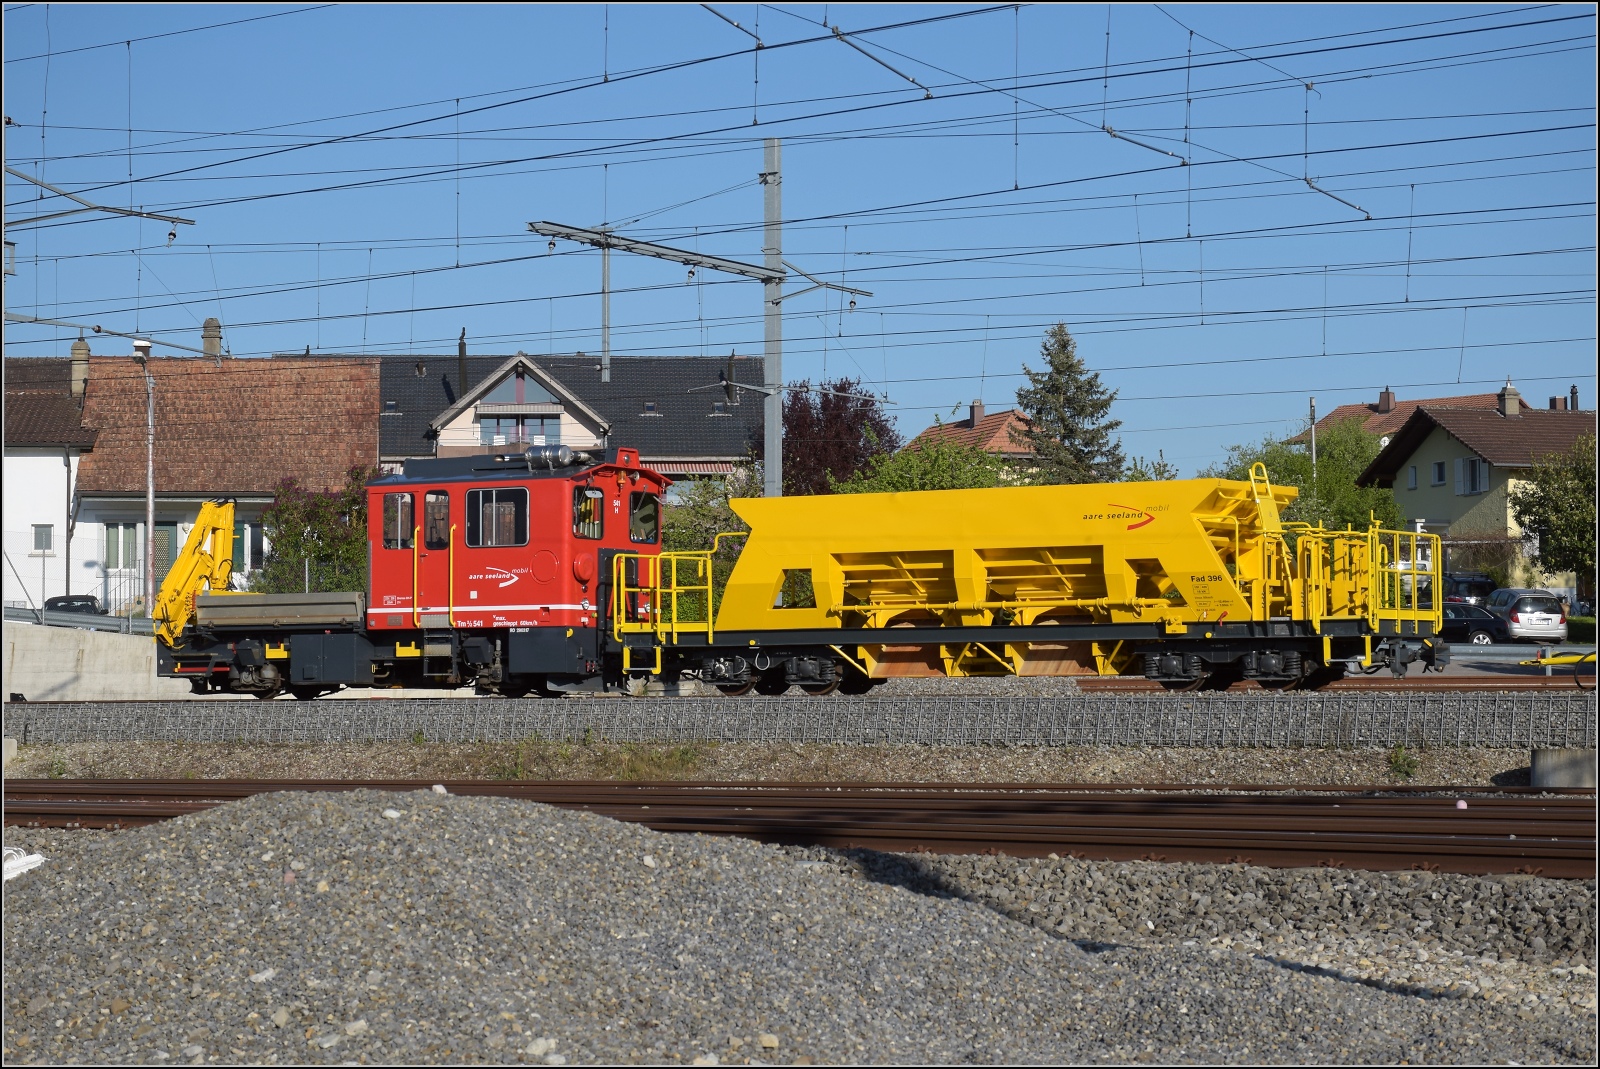 Auf der Biel-Täuffelen-Ins Bahn.

Rangier und Bautraktor Tm 2/2 541 mit Kieswagen X 392 in Siselen, April 2022.